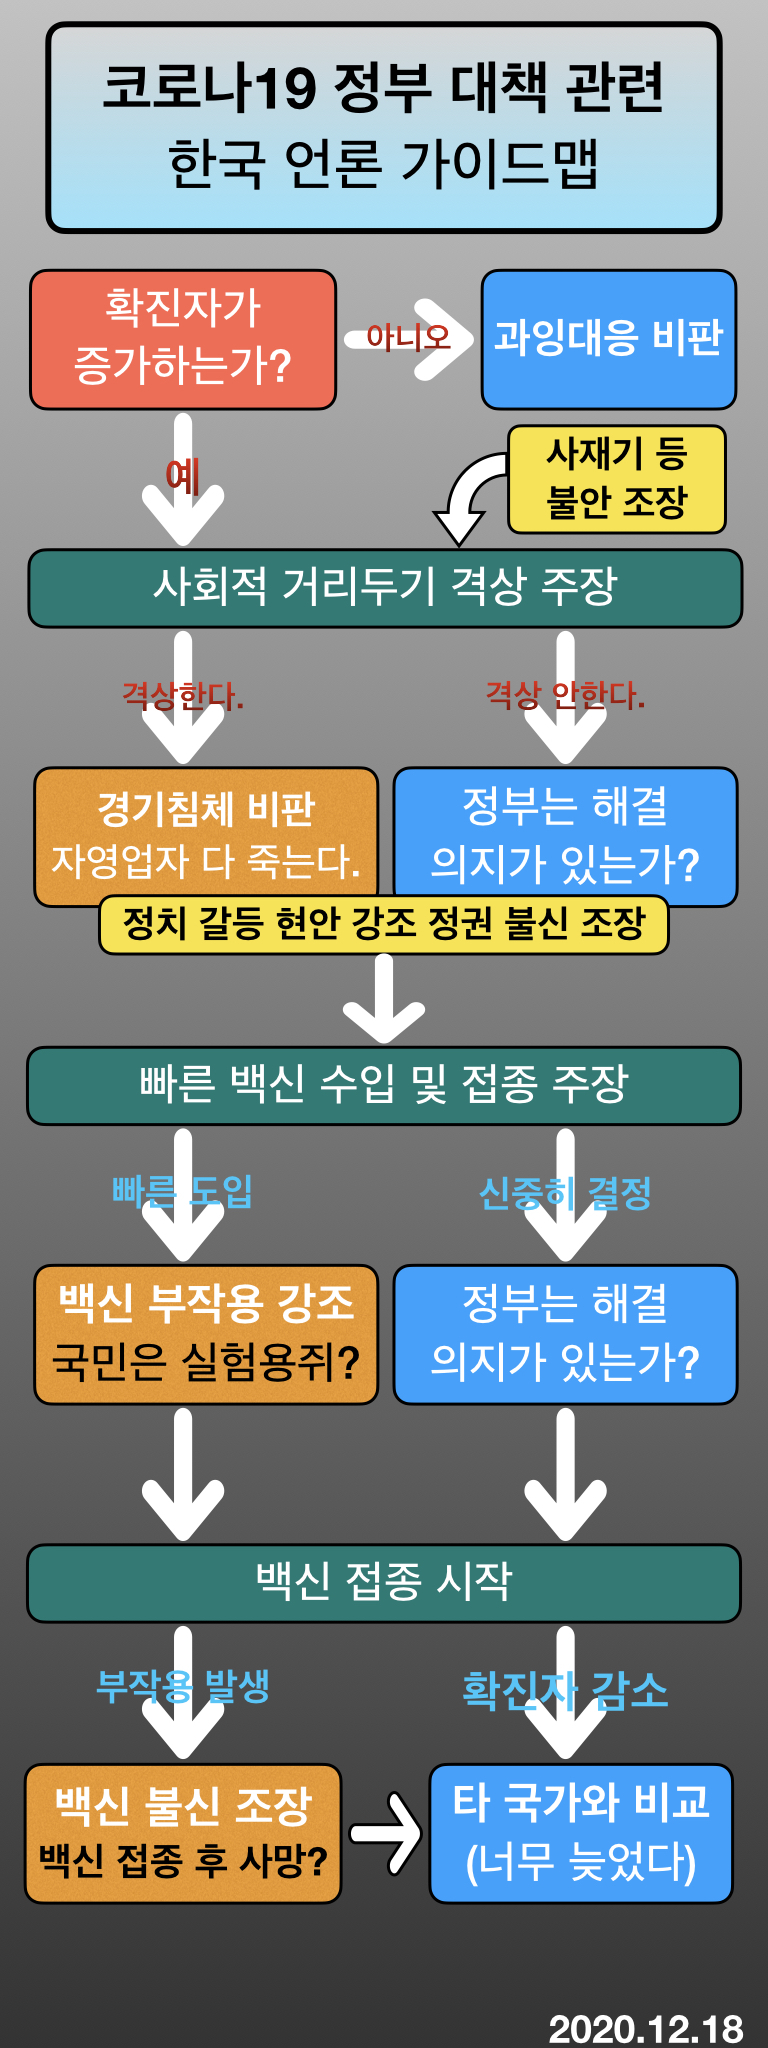 우한 코로나  한국언론 가이드맵